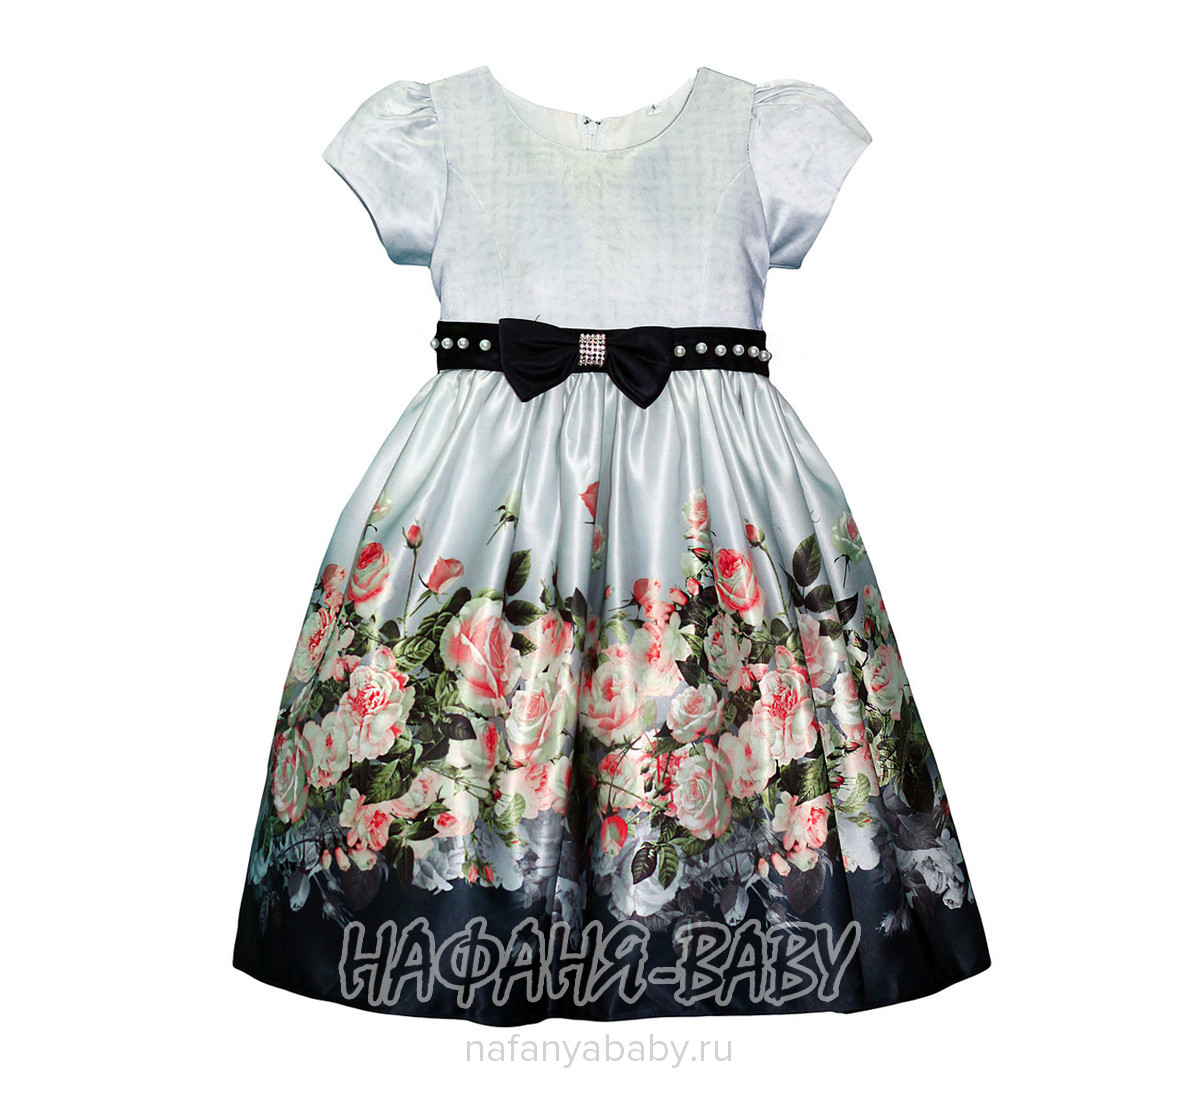 Детское платье YOU YITAO, купить в интернет магазине Нафаня. арт: 16942.